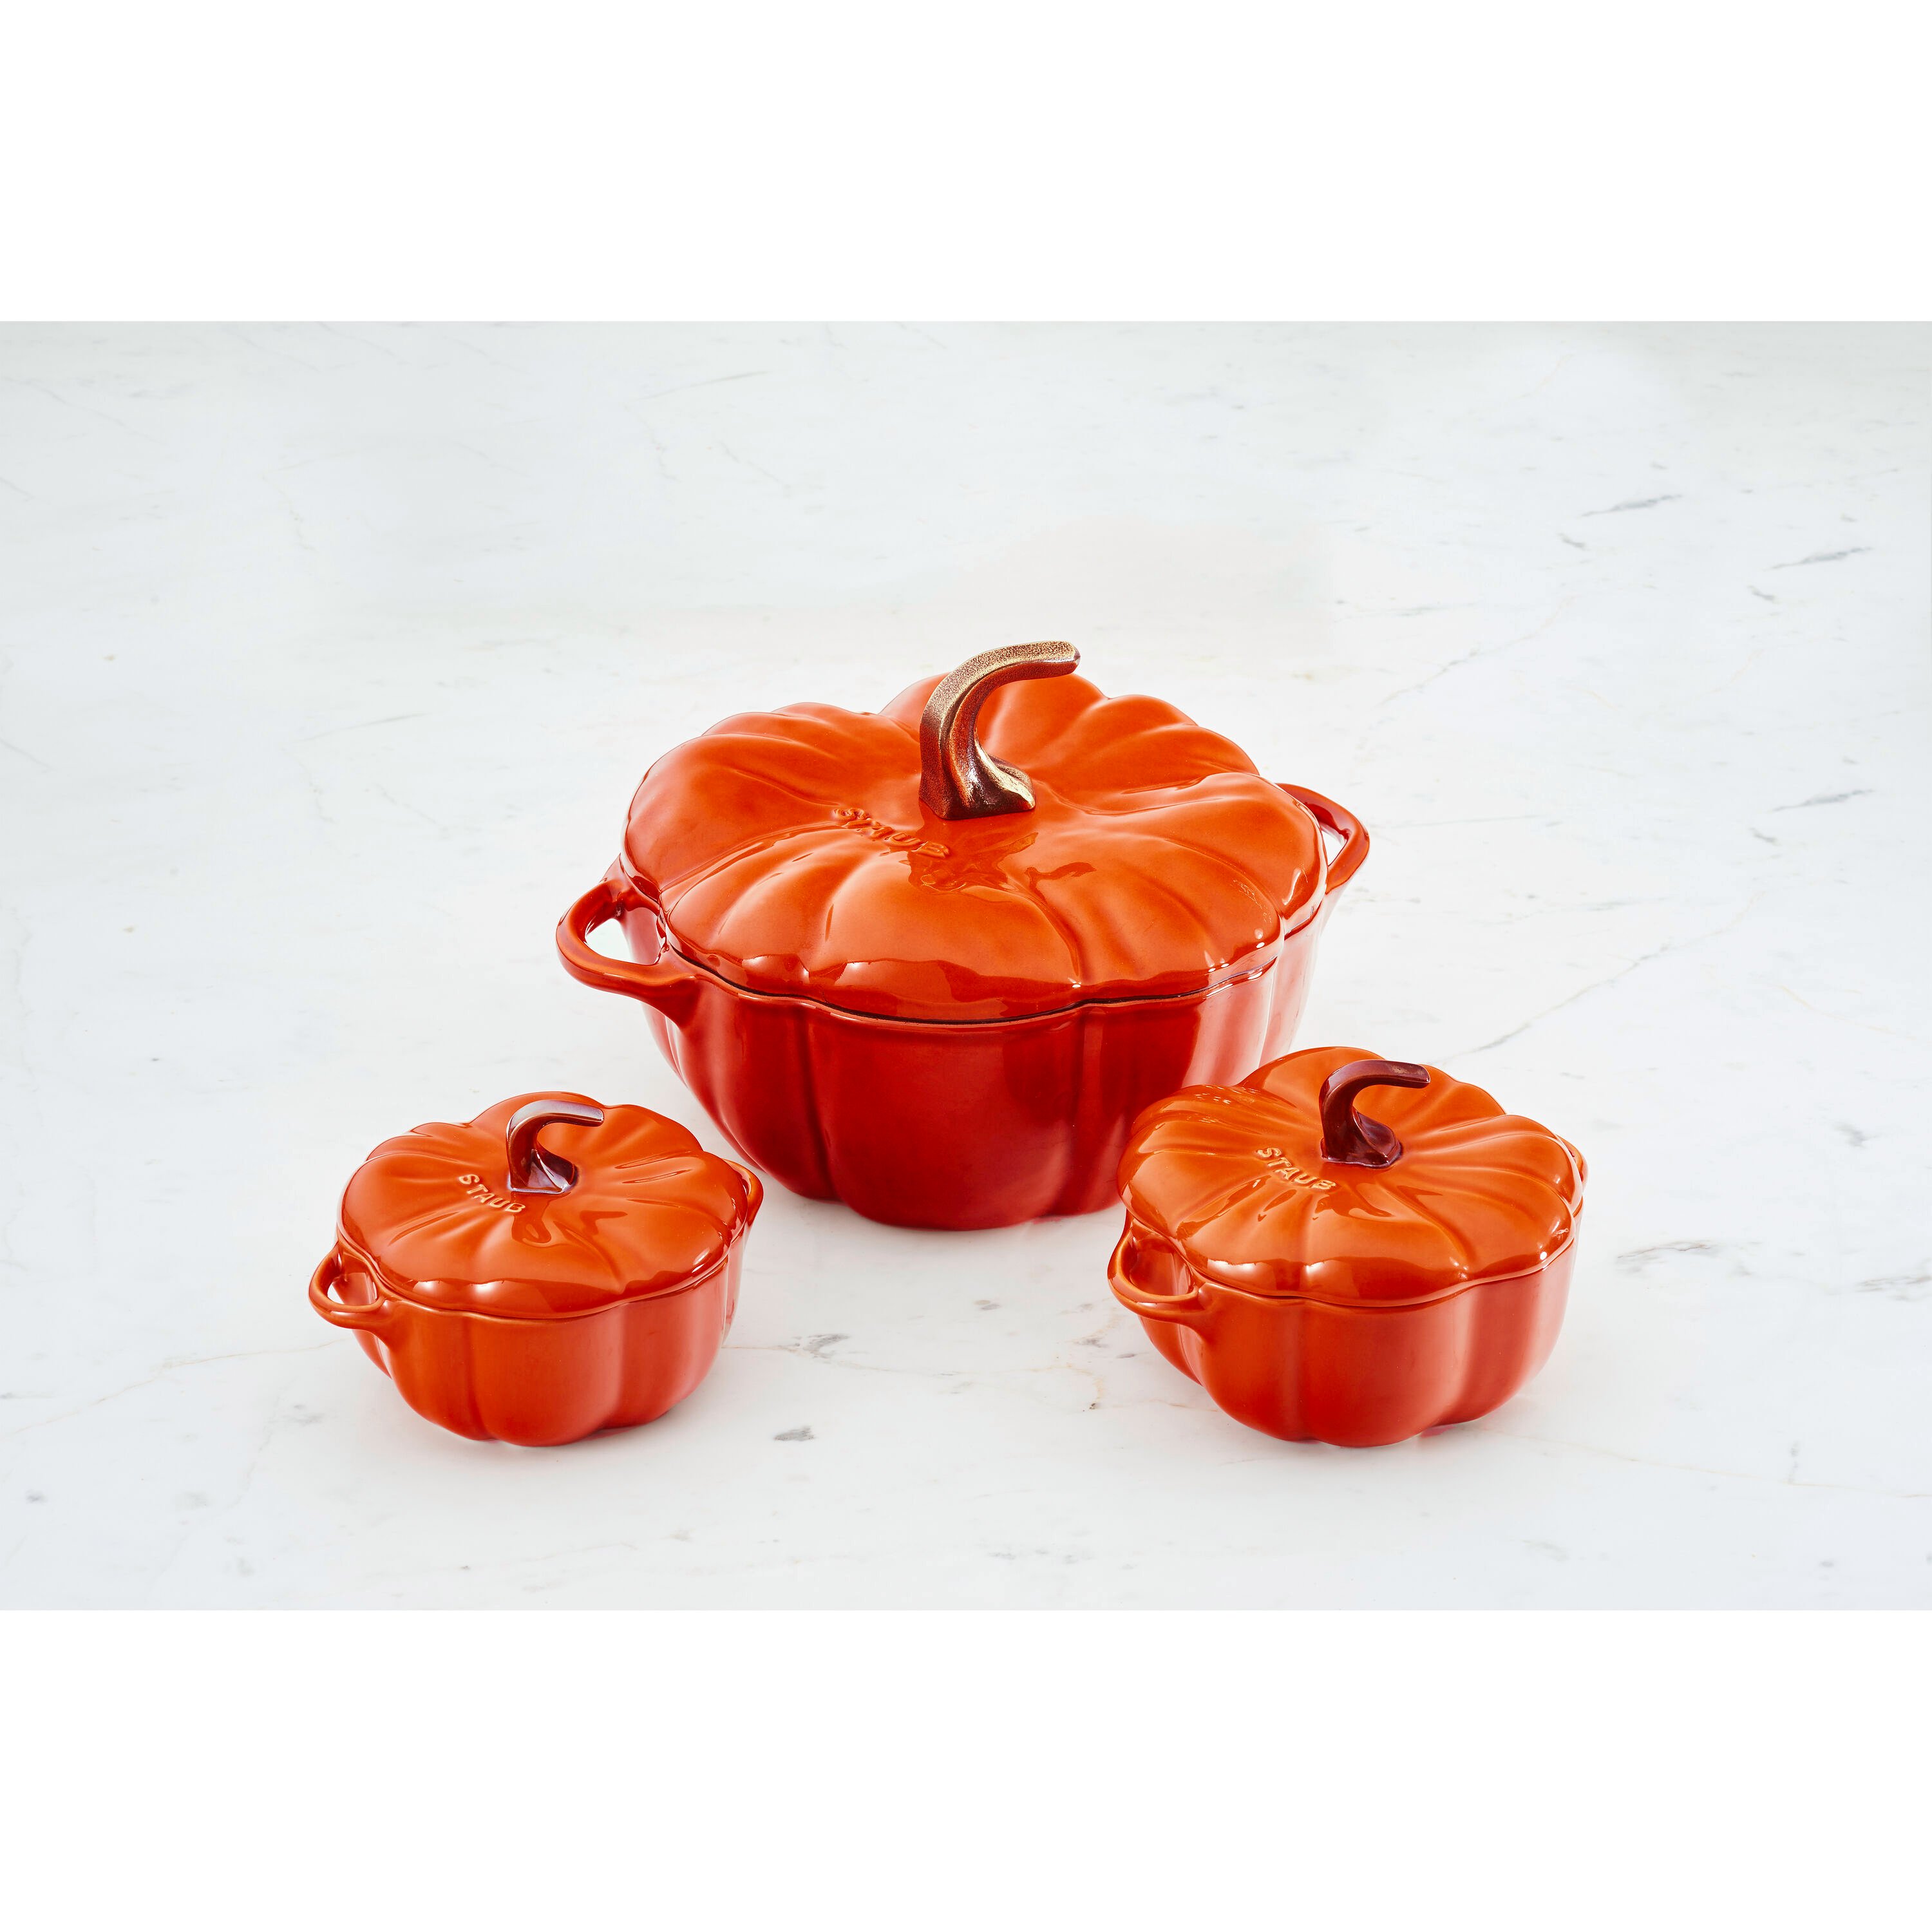 Enamel Cast Iron Pot Pumpkin Cocotte Dutch Oven 3.5 Quart Burnt Orange  Casserole Pot with Lid